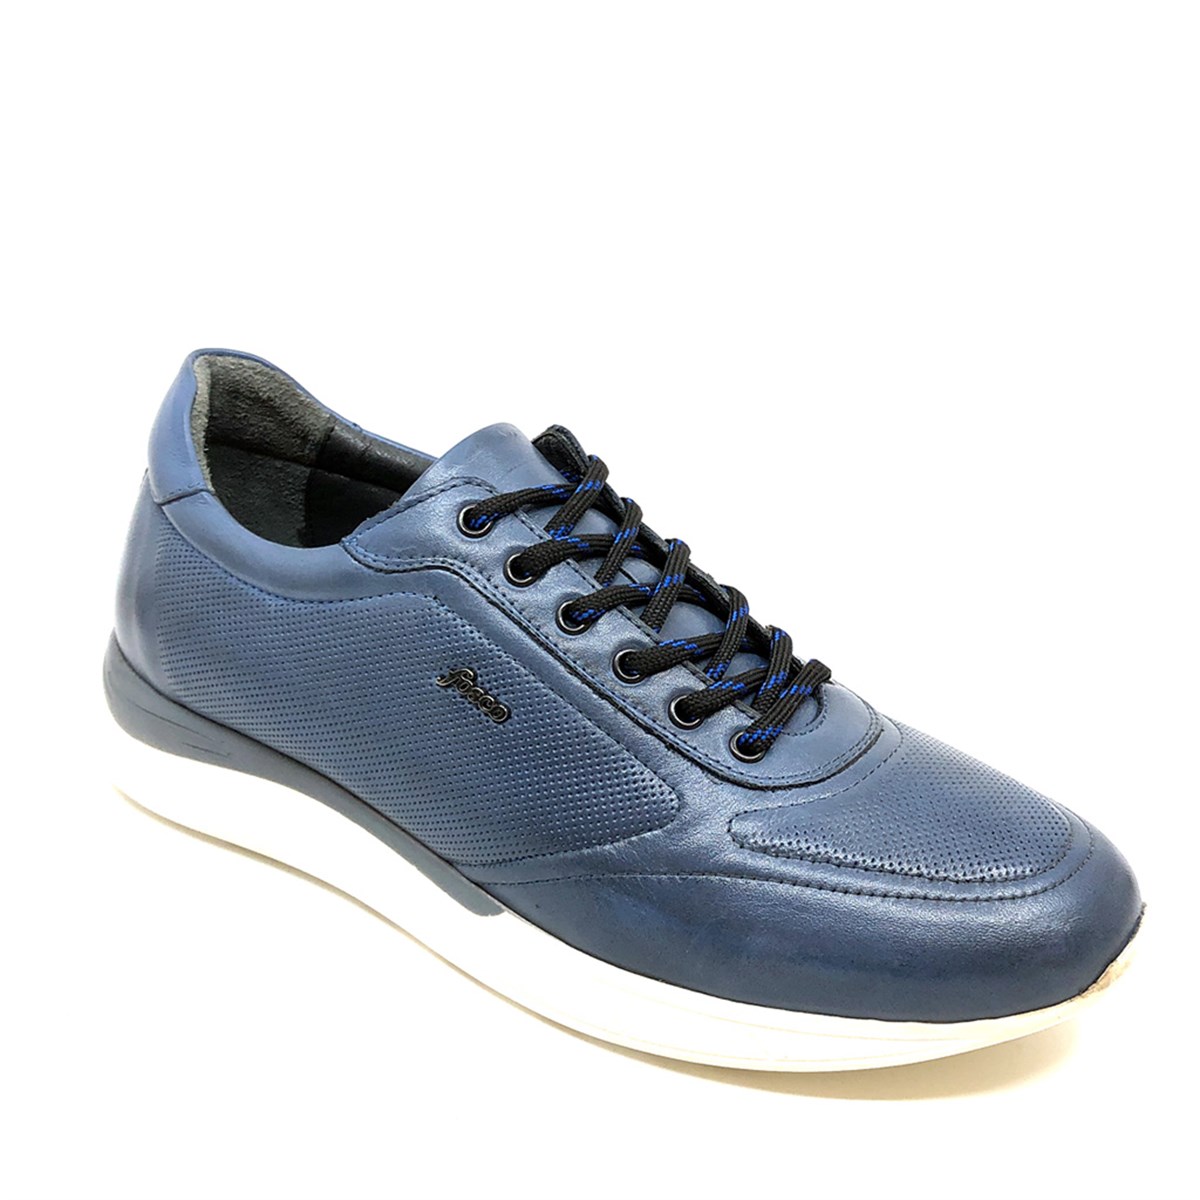 Sneakers Günlük Erkek Ayakkabı, Renk: Mavi, Beden: 40